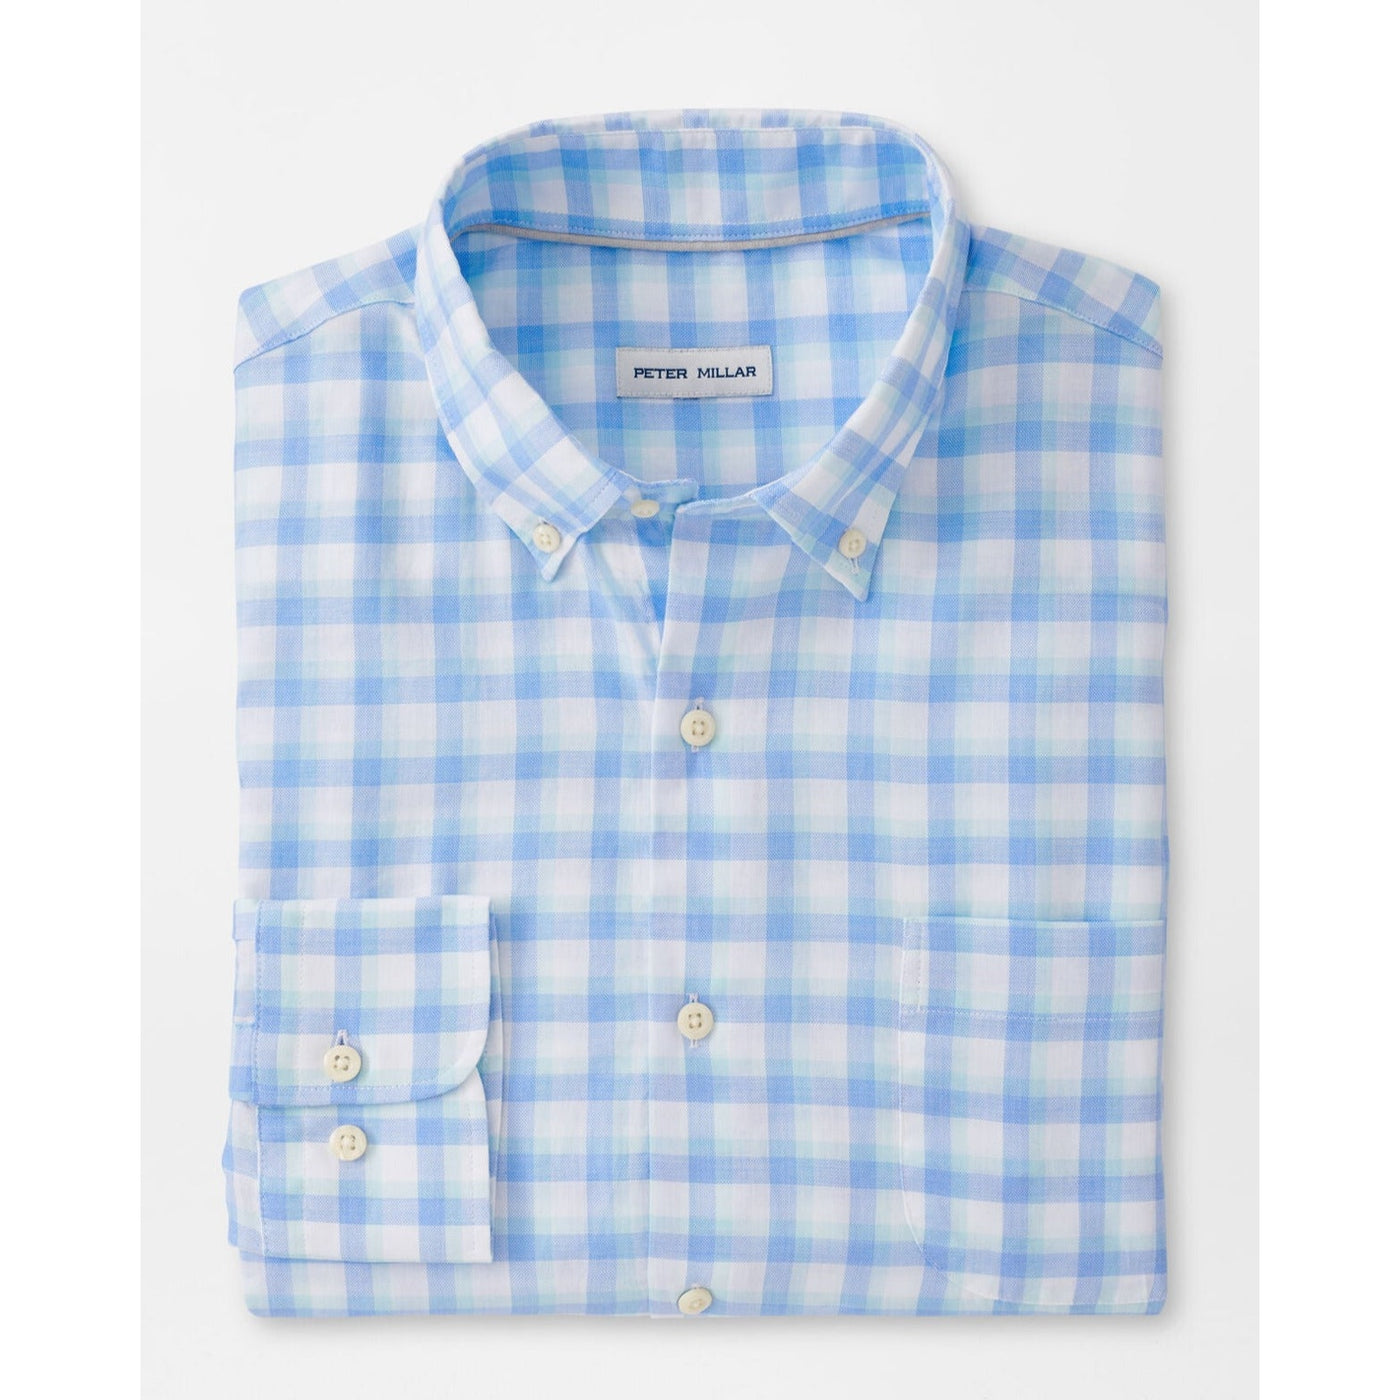 Peter Millar Finley Summer Soft Cotton Sport Shirt-Men's Clothing-Kevin's Fine Outdoor Gear & Apparel